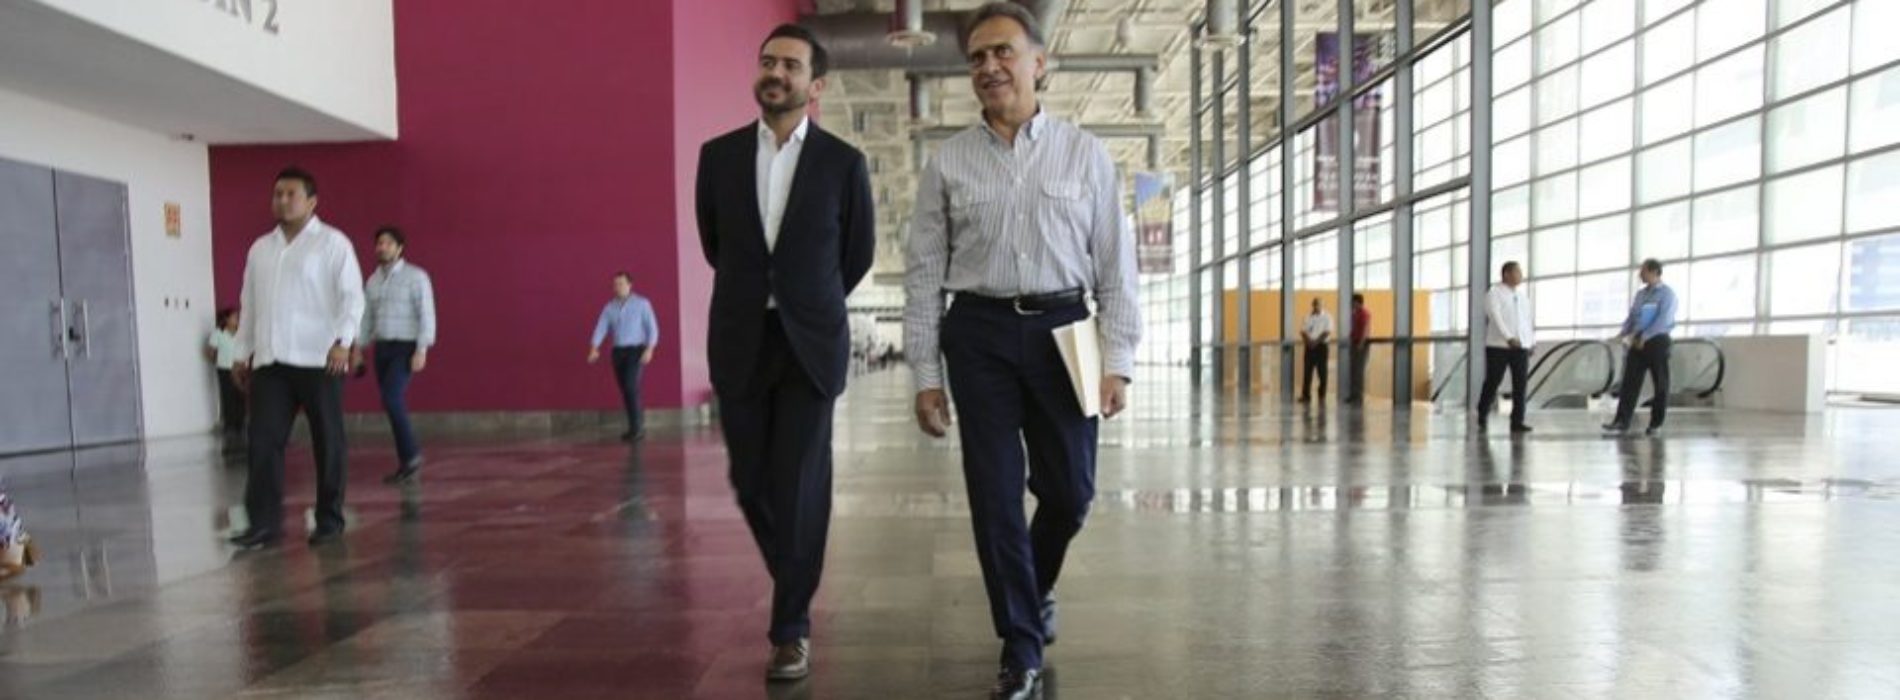 Yunes promociona a su hijo, candidato a la gubernatura de
Veracruz, en un video turístico